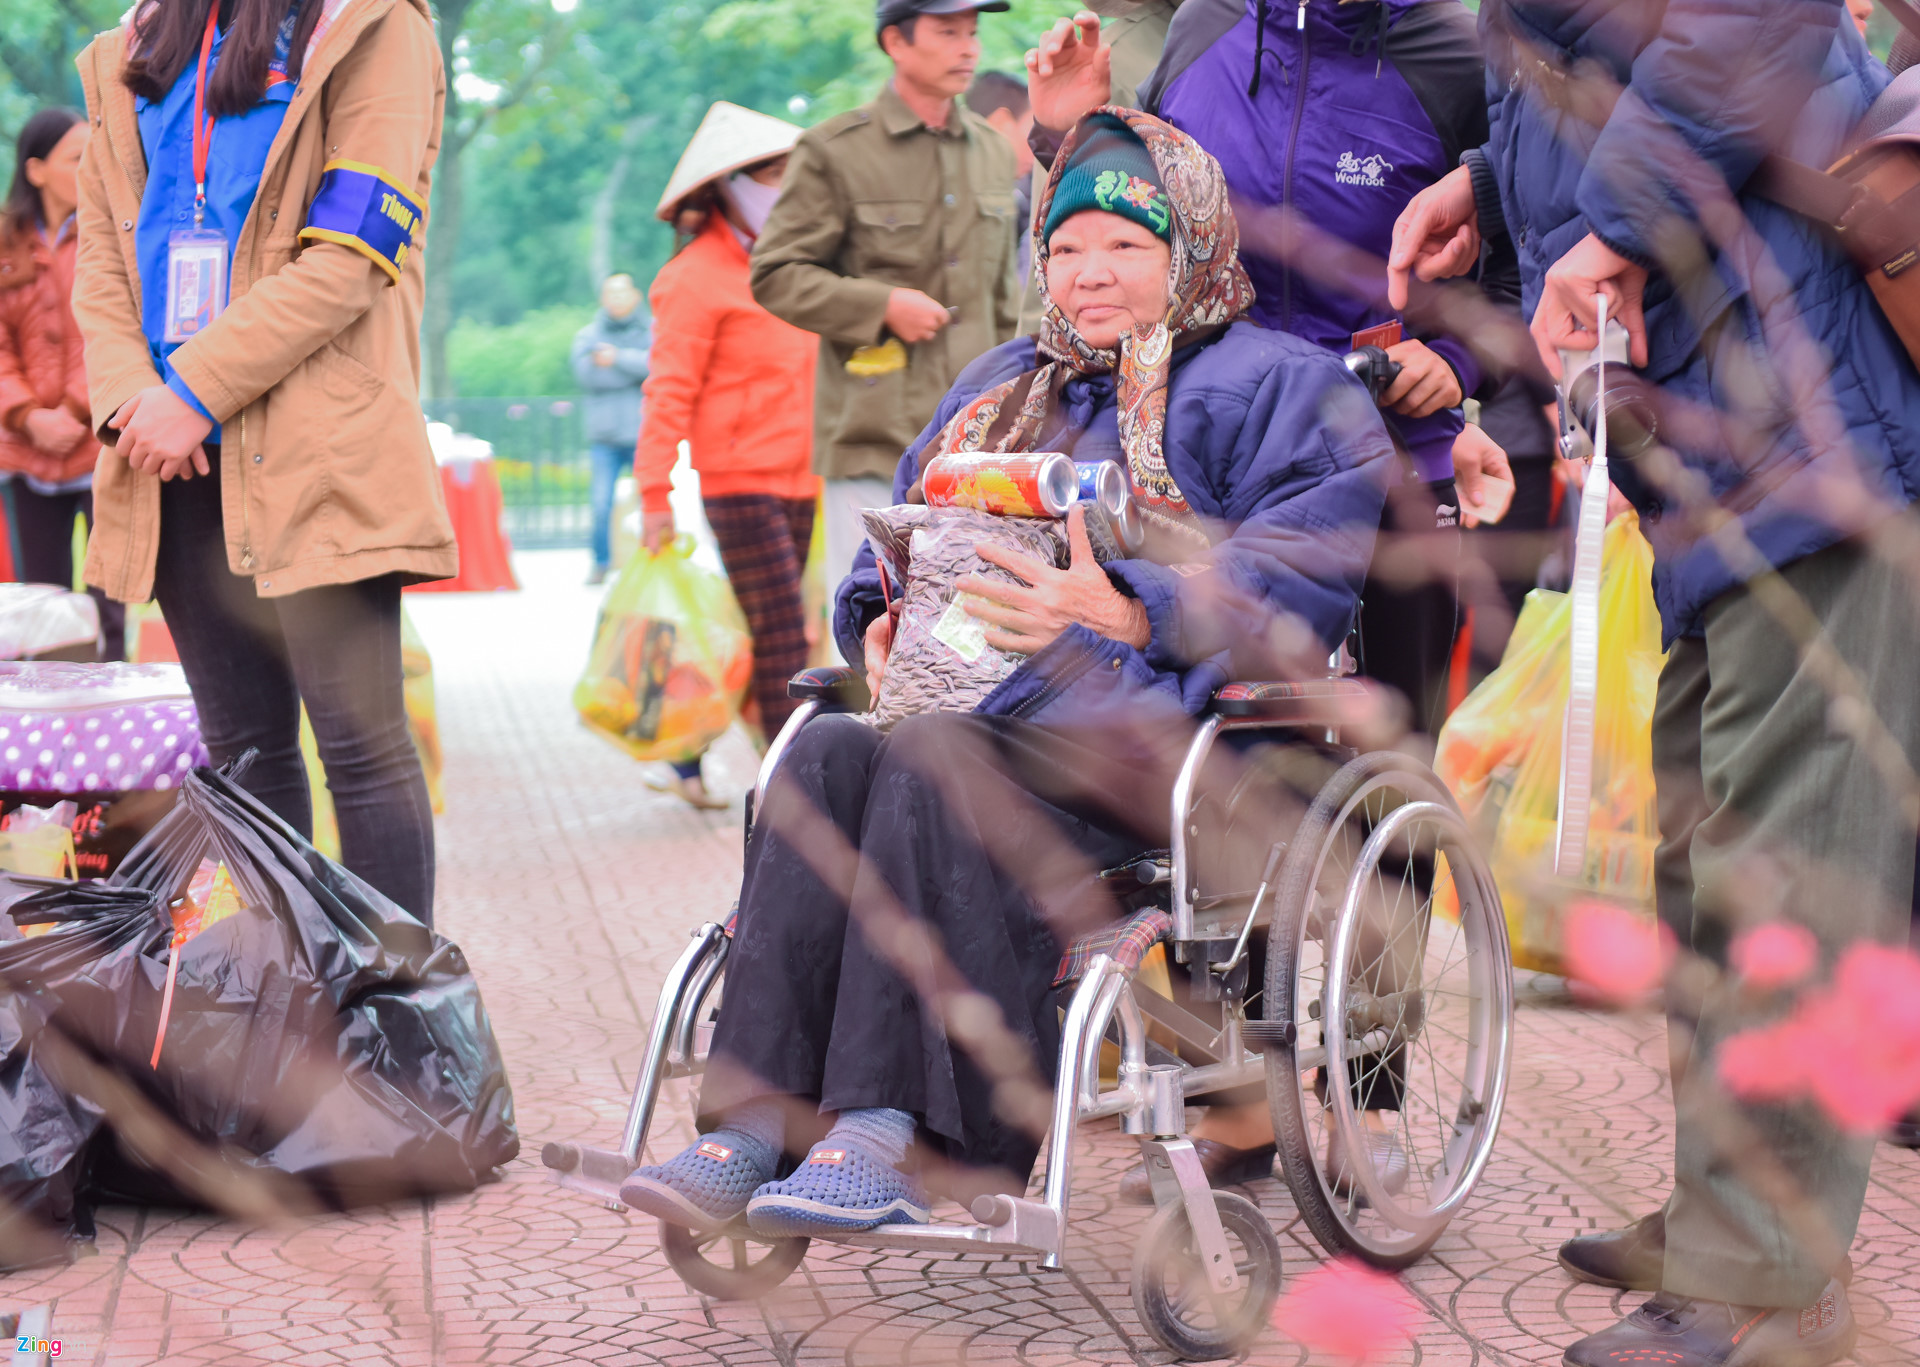 Bà Vũ Thị Thân, 78 tuổi, bệnh nhân chạy thận tại bệnh viện Bạch Mai cho biết do nhà gần công viên Thống Nhất nên dù phải ngồi xe lăn vẫn muốn ra mua sắm để đón Tết và cũng cho đỡ tù túng.